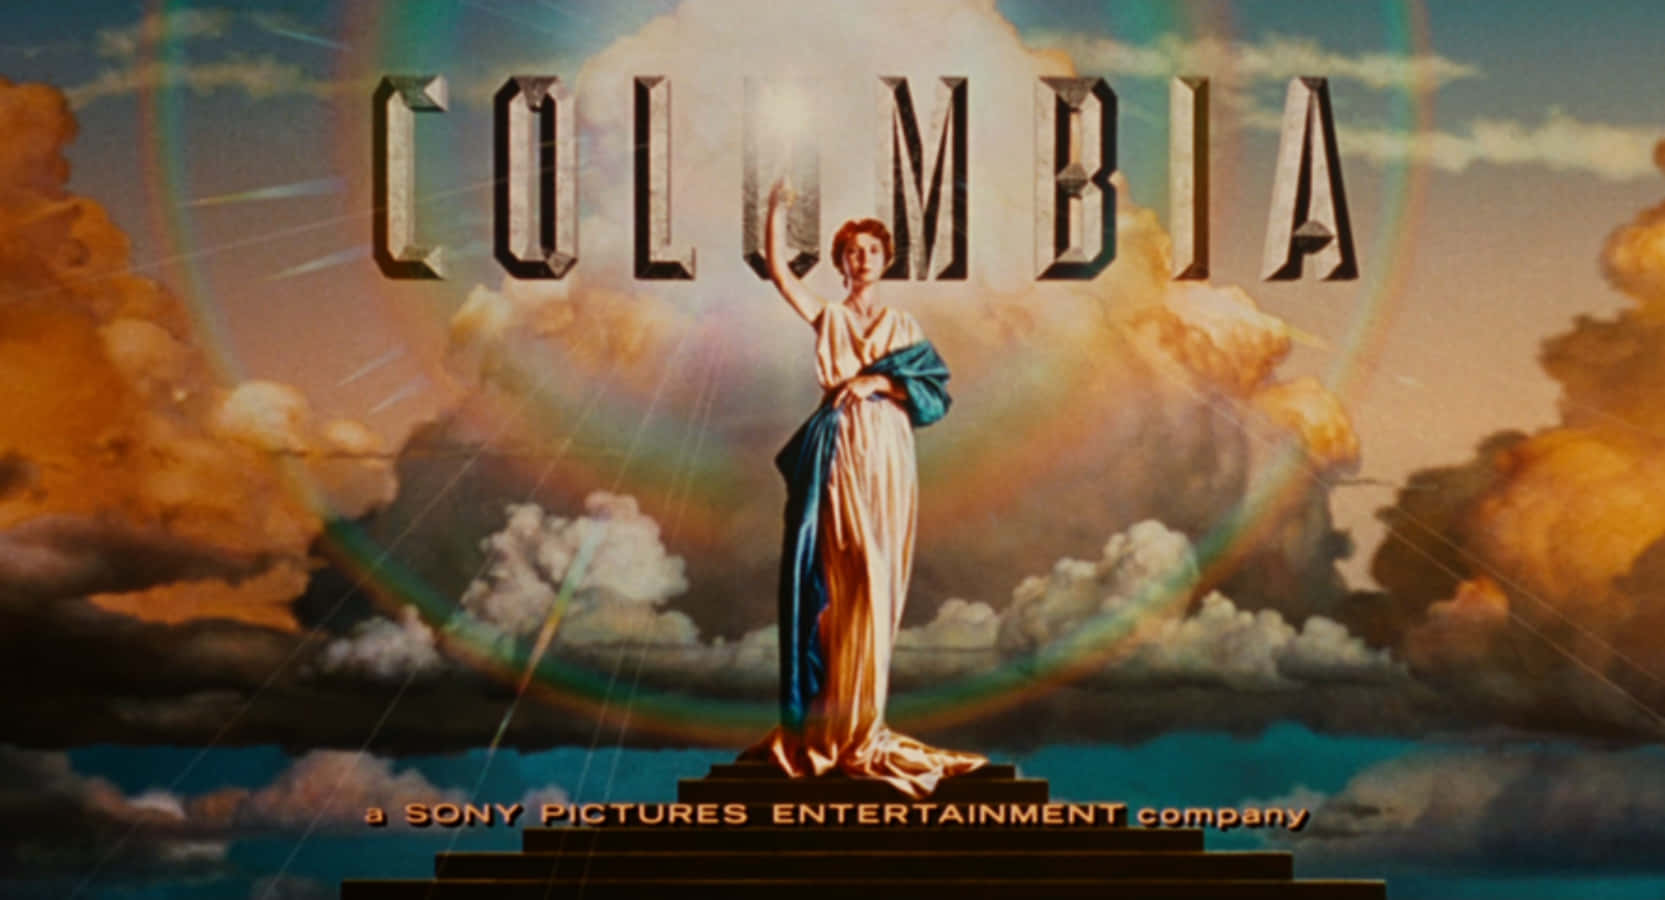 Logotypenför Columbia Pictures På Skärmen.